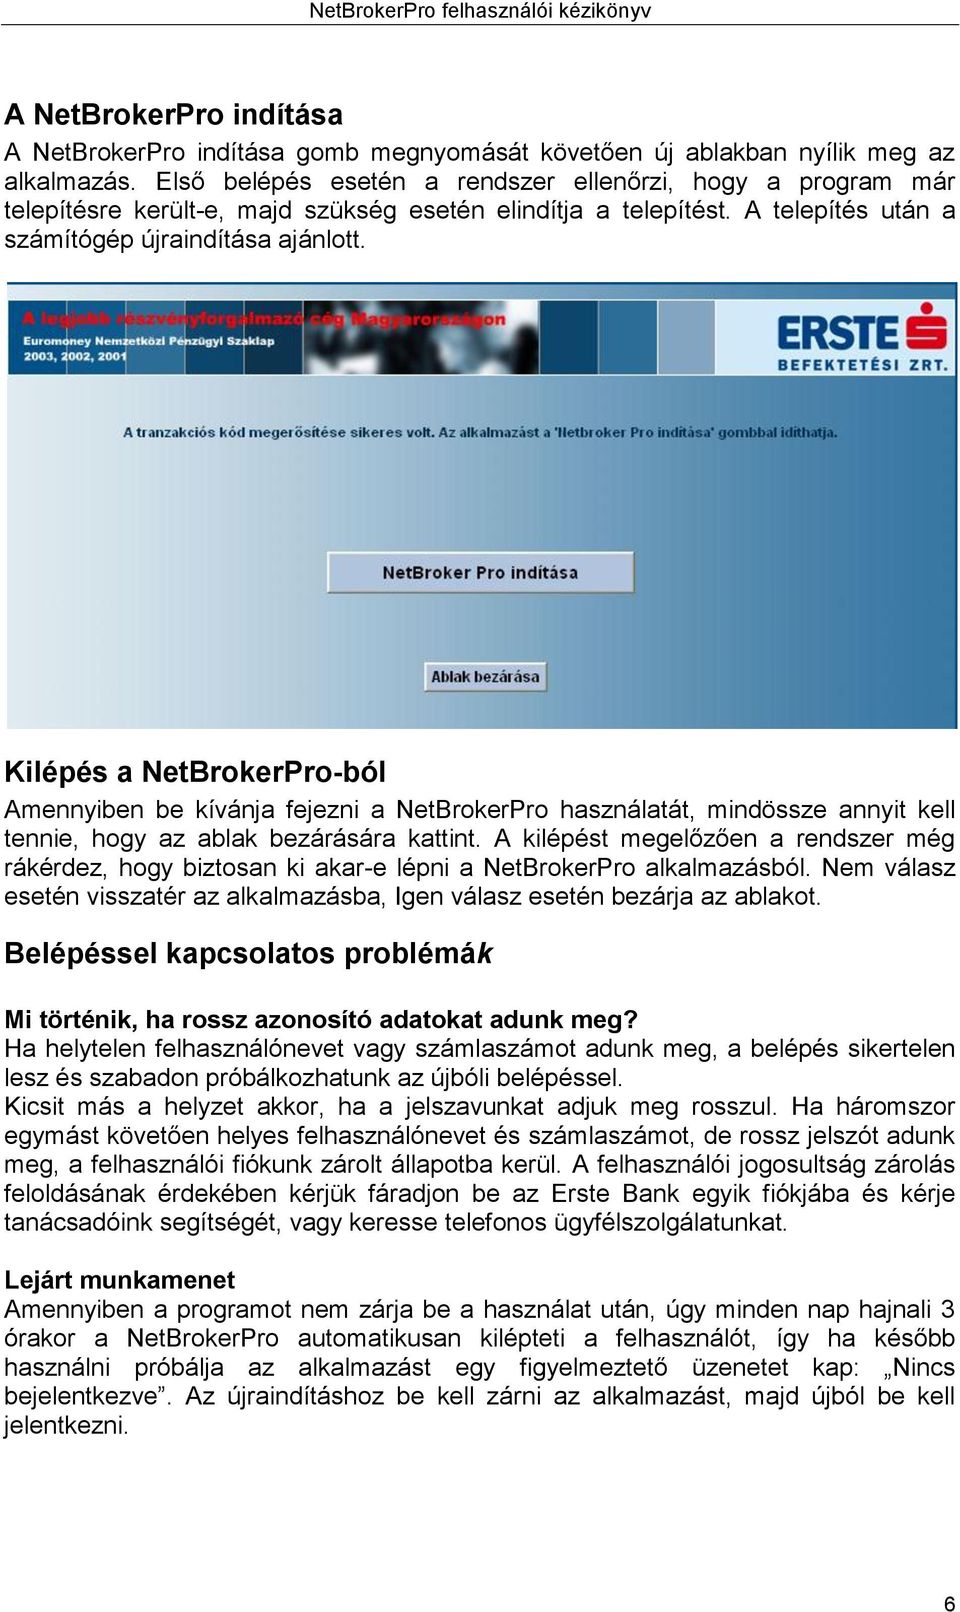 NetBrokerPro Internetes kereskedési rendszer Felhasználói kézikönyv - PDF  Ingyenes letöltés